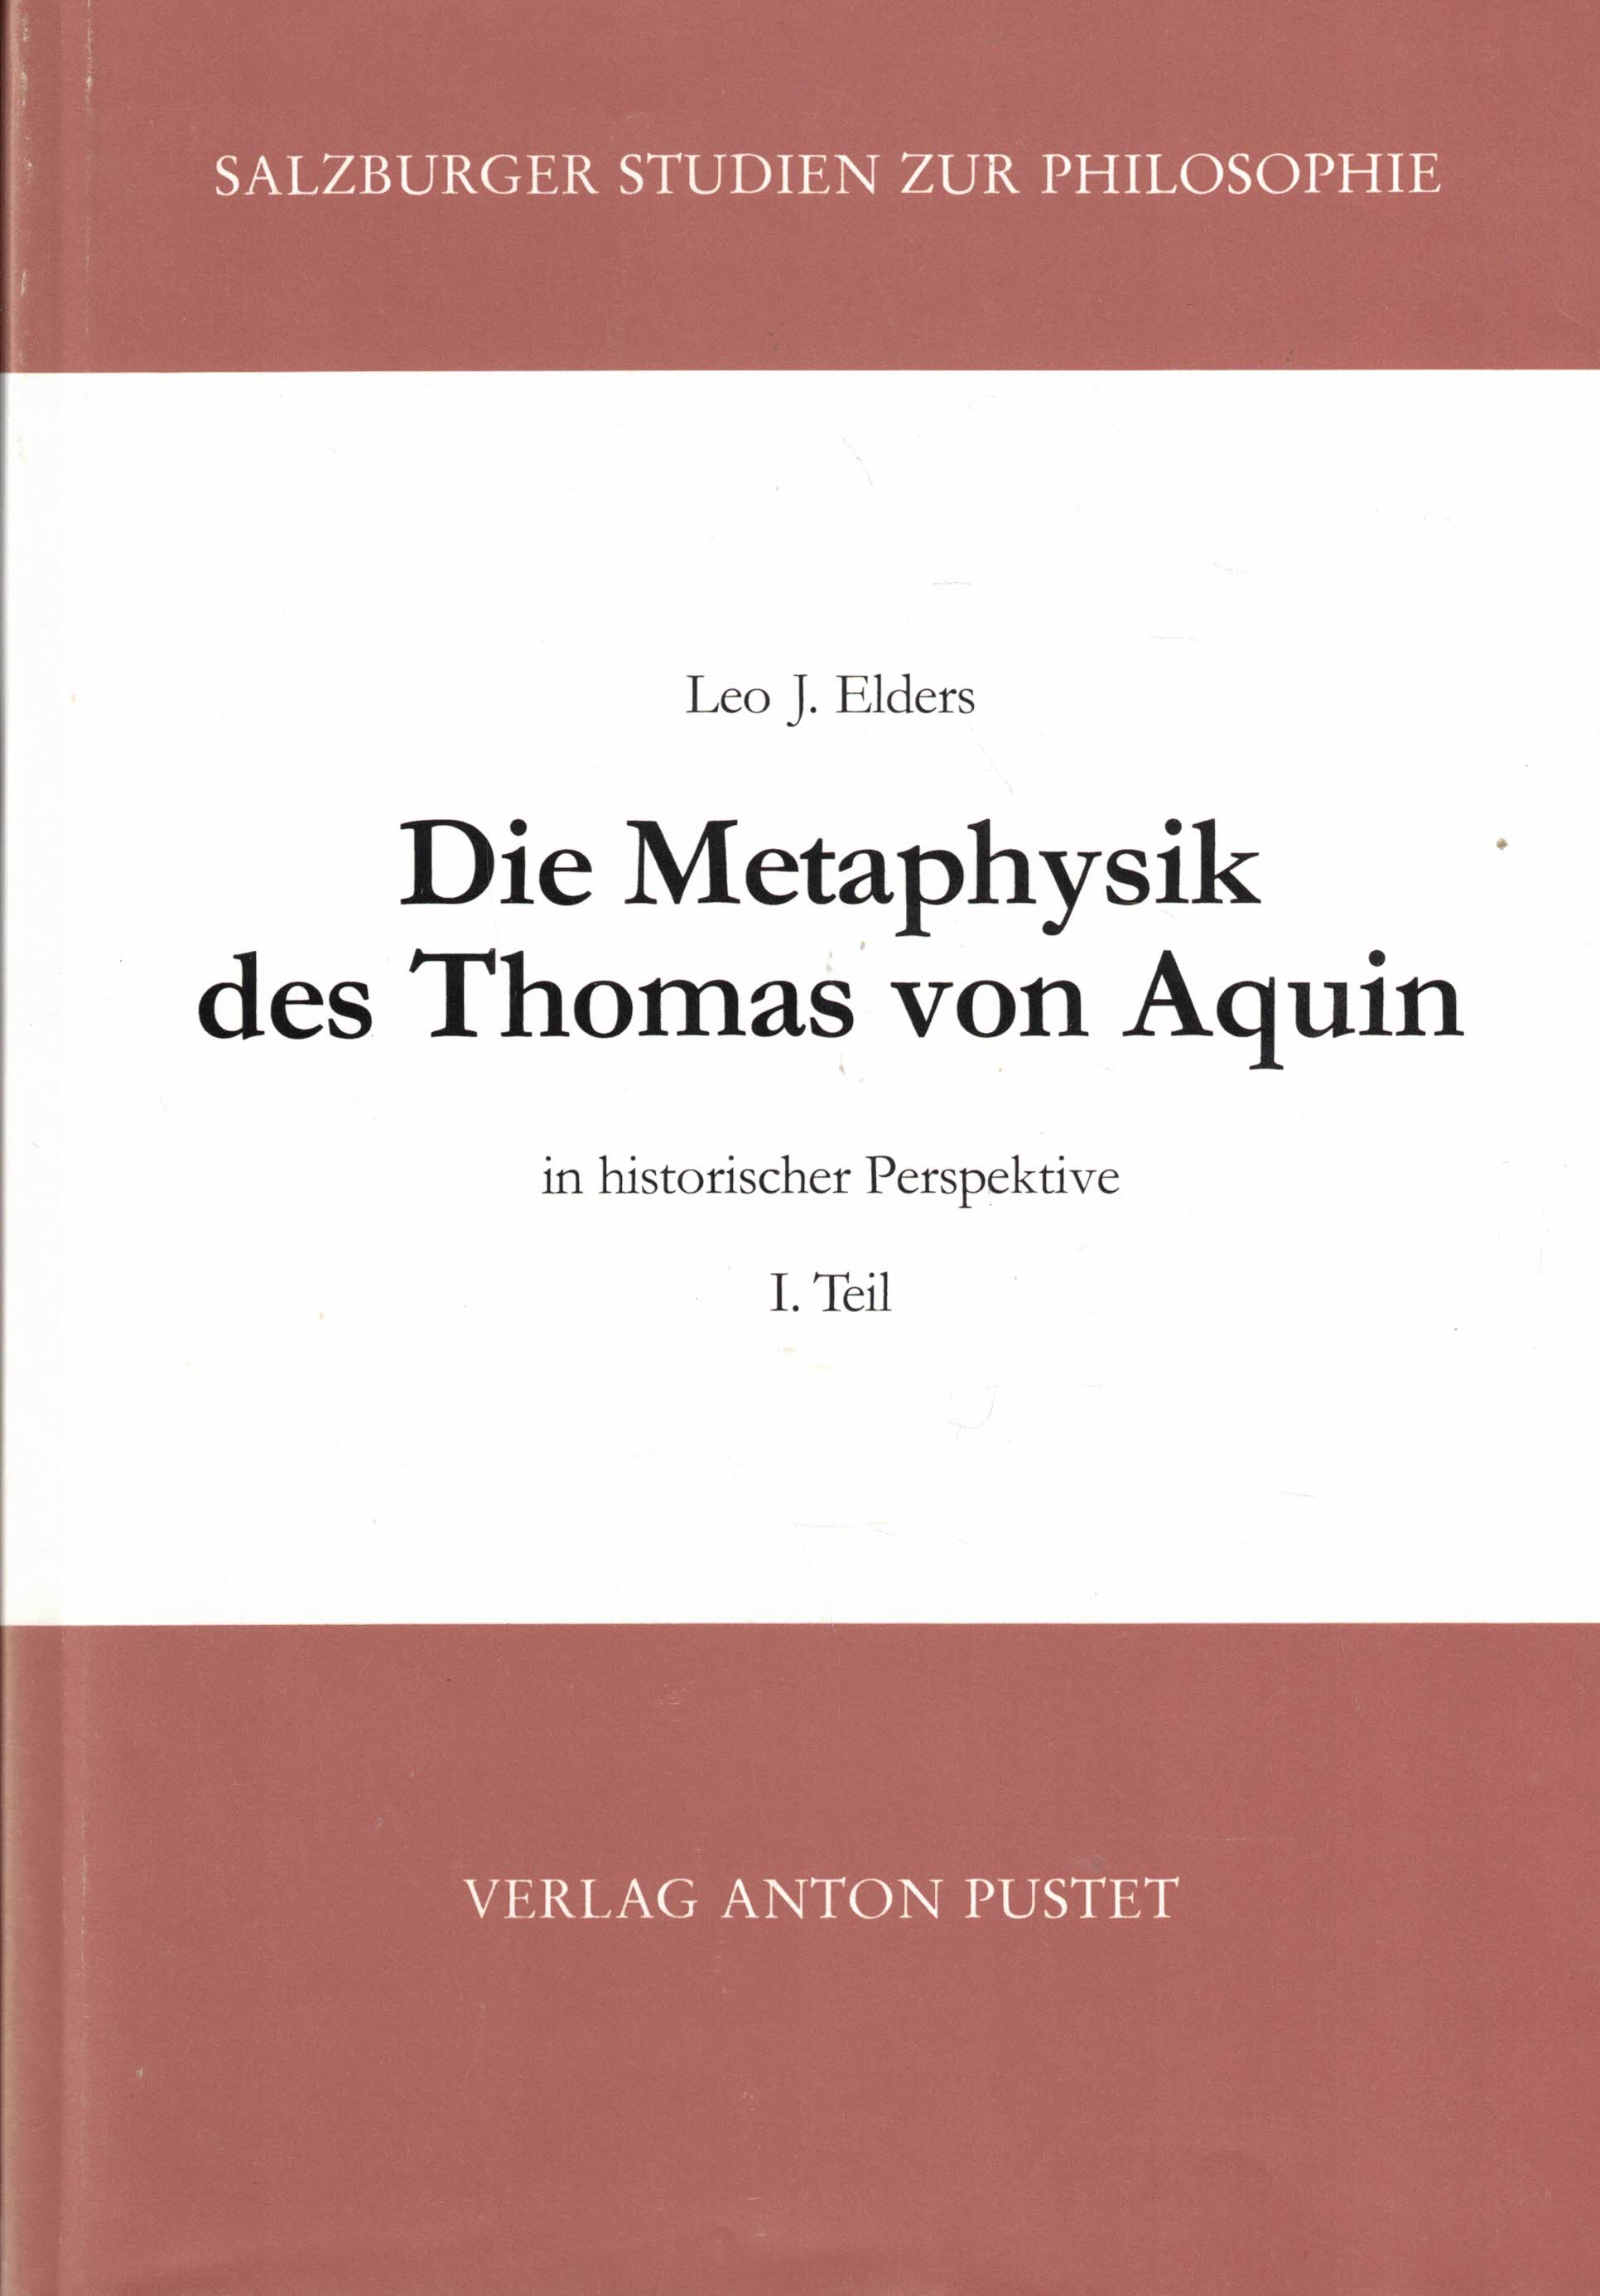 Die Metaphysik des Thomas von Aquin in historischer Perspektive. I. Teil: Das ens commune (Salzburger Studien zur Philosophie Band16) - Elders, Leo J.